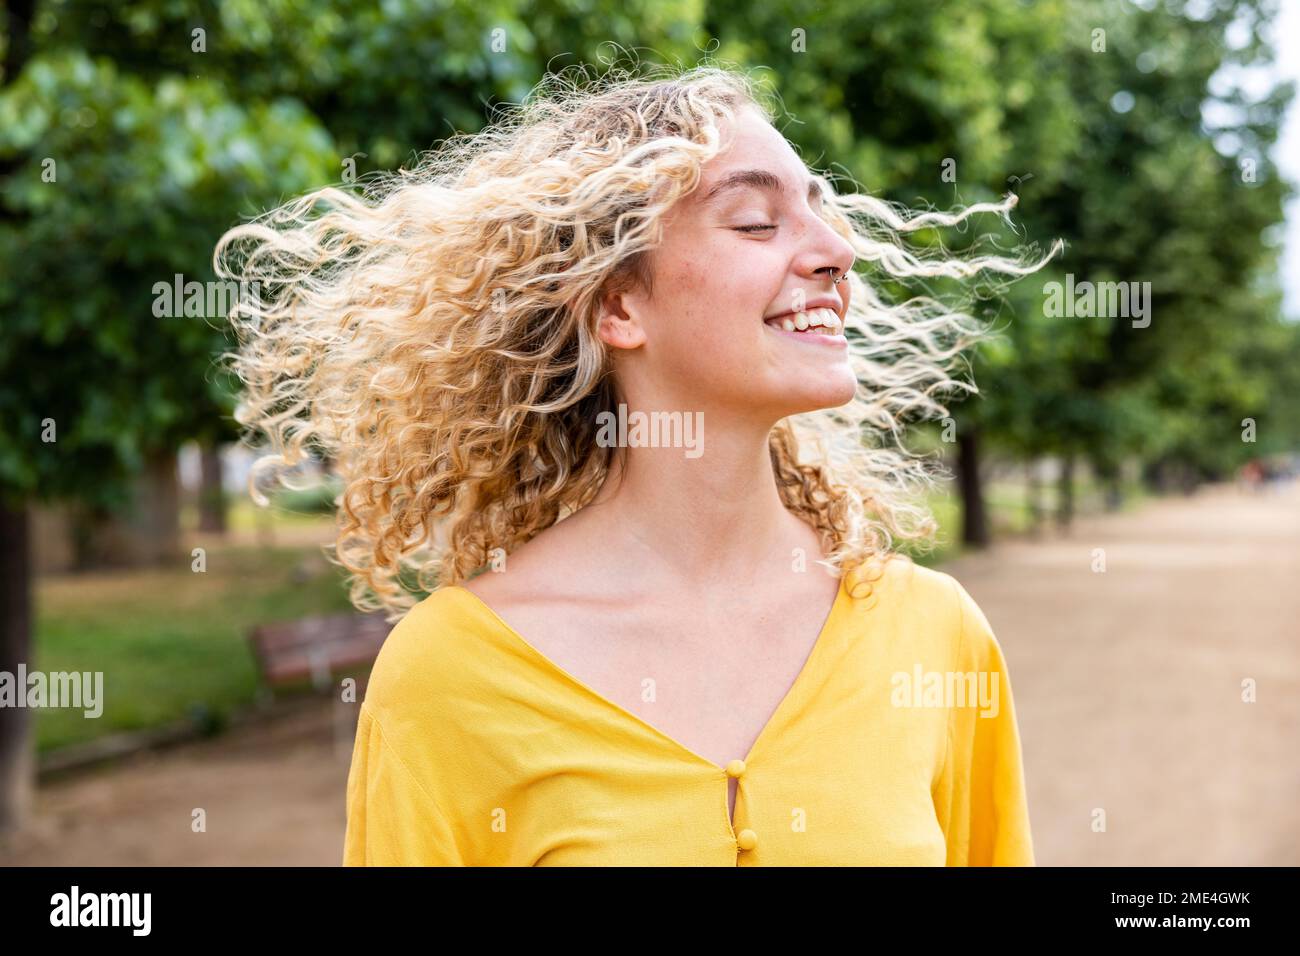 Glückliche junge Frau mit blonden Haaren, die im Park Spaß hat Stockfoto